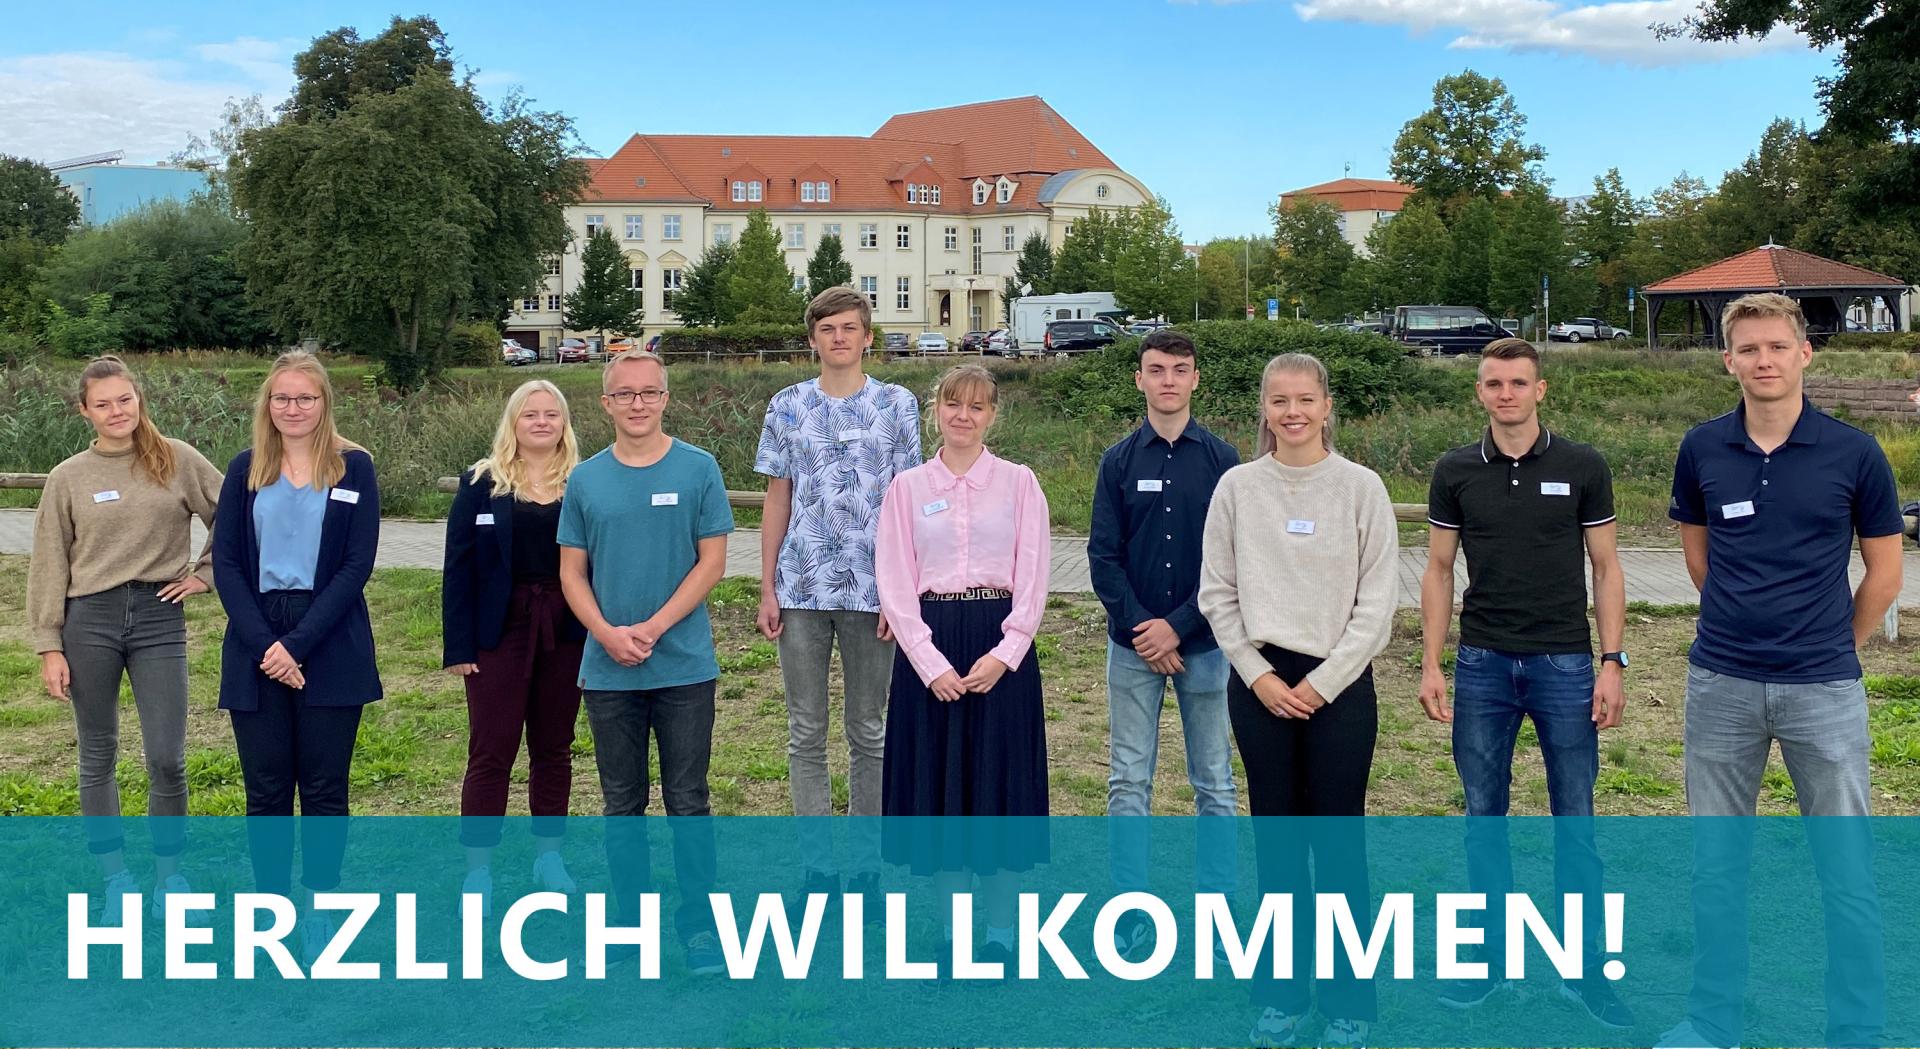 Herzlich willkommen Auszubildende und Studierende in der Kreisverwaltung des Landkreises Oberspreewald-Lausitz! (Foto Landkreis)